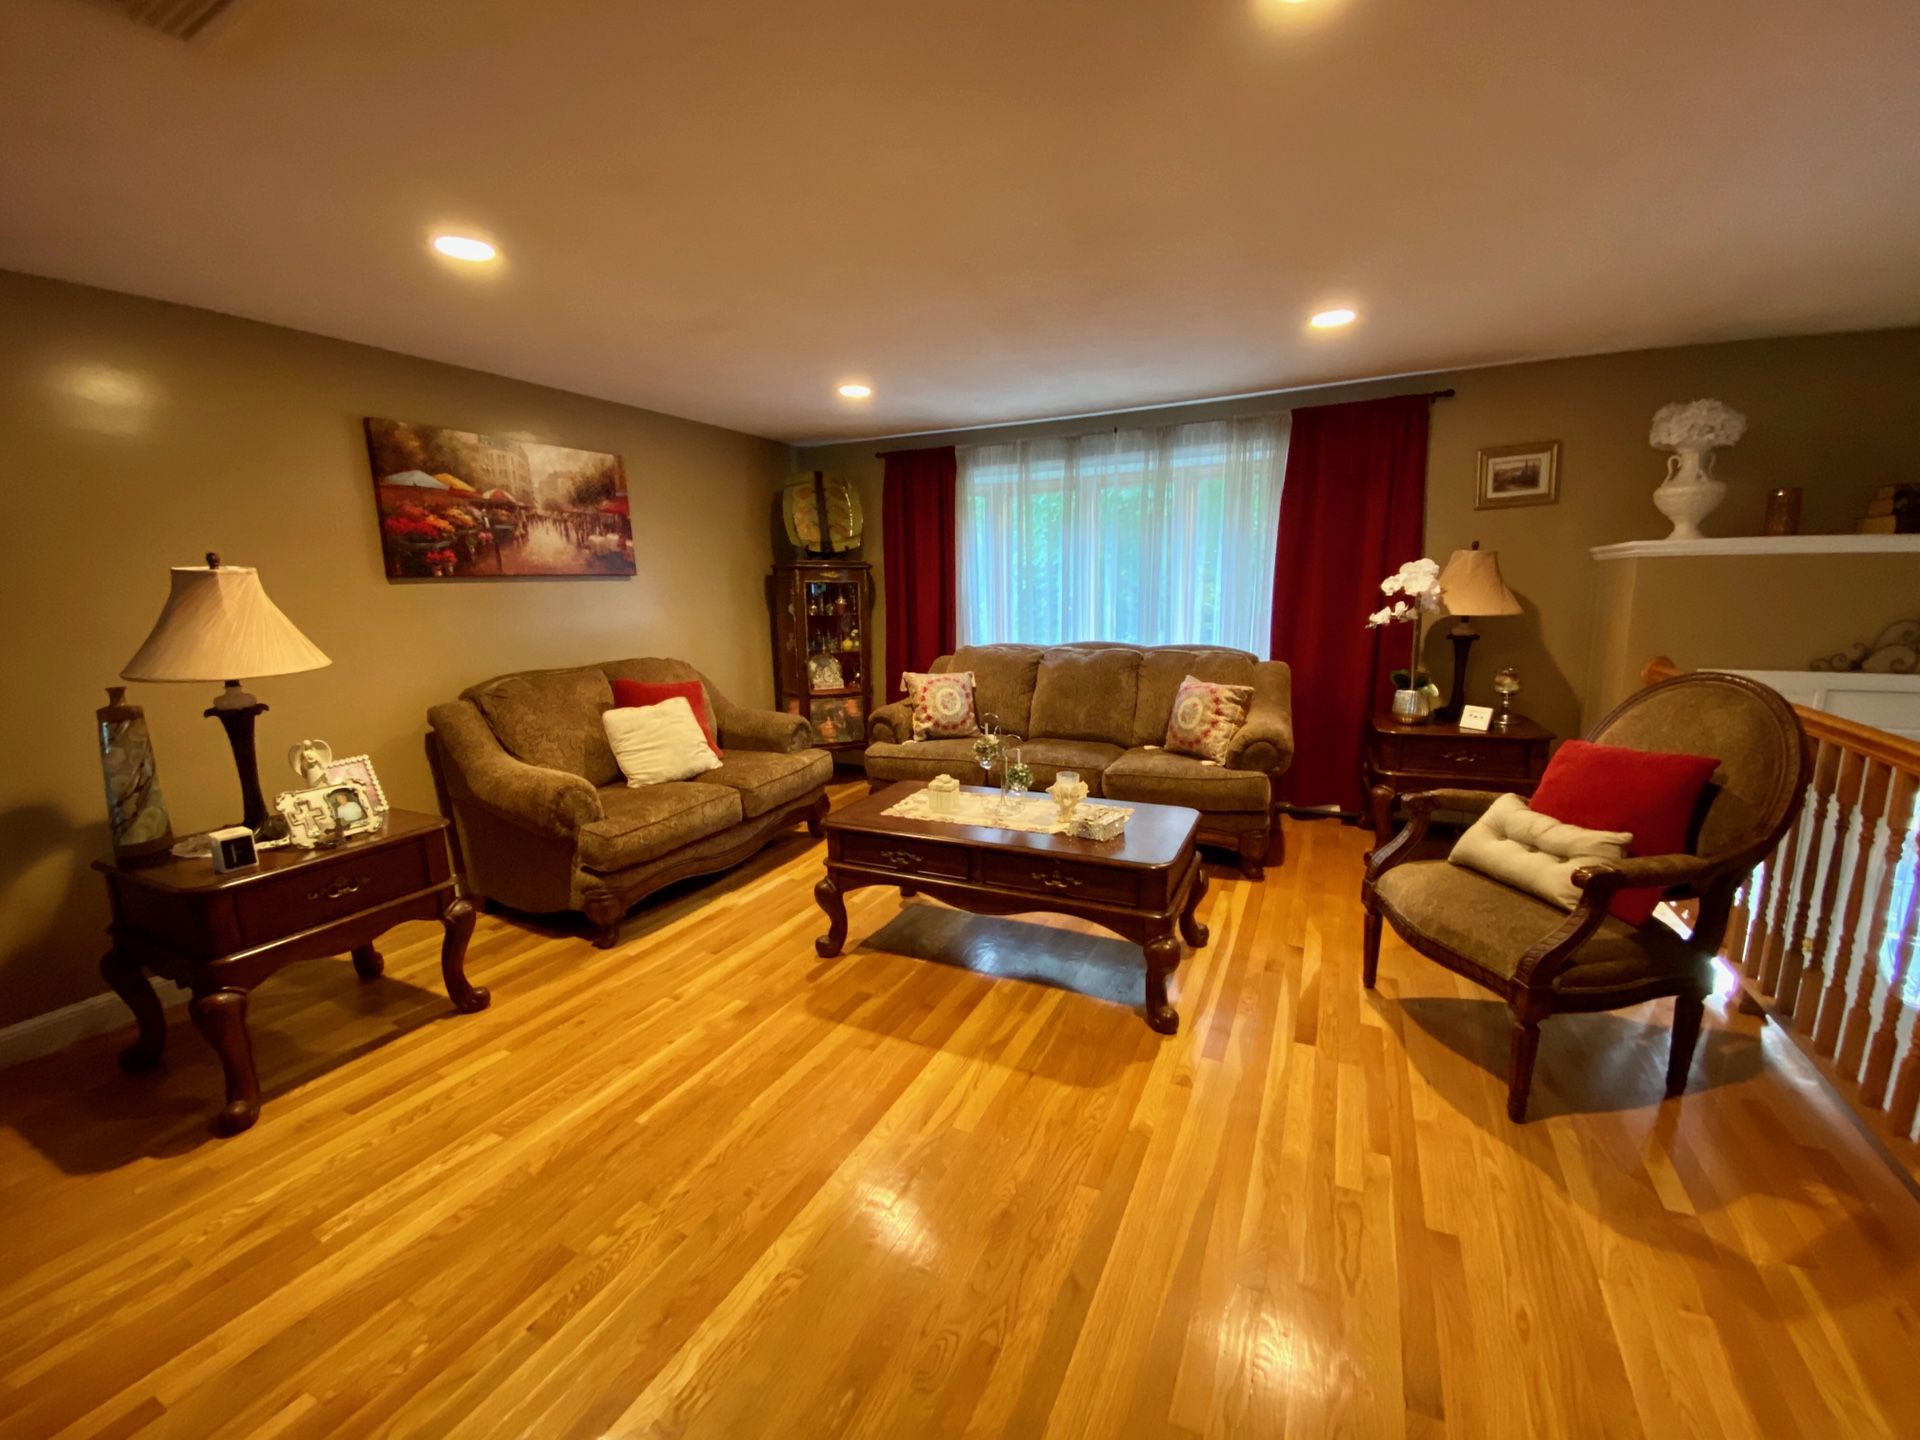 Formal Living Room Set